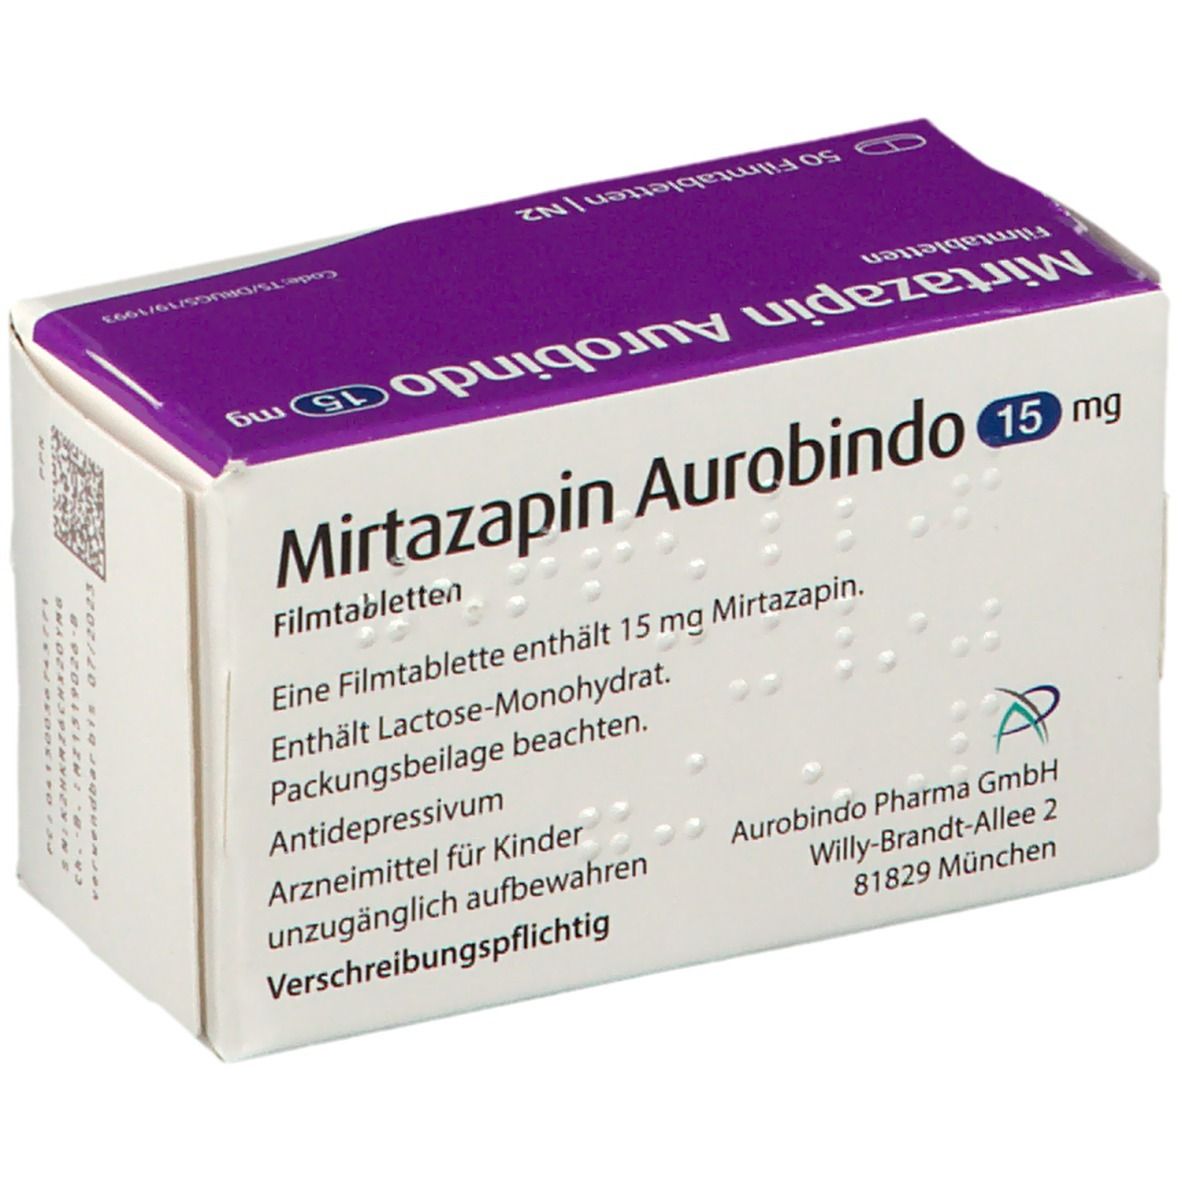 Mirtazapin Aurobindo 15 mg